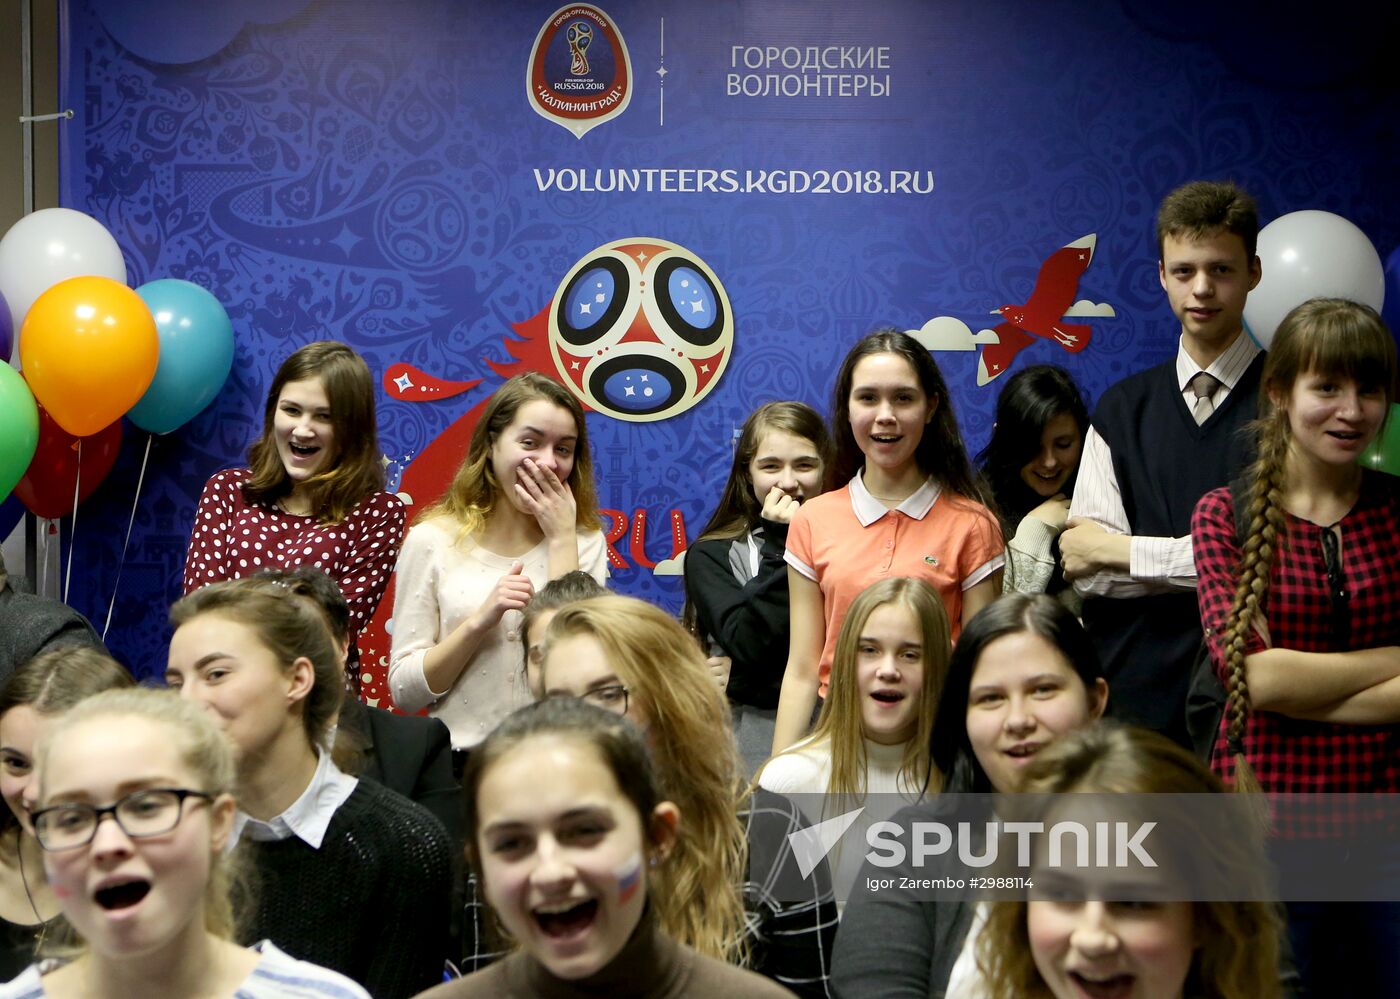 Volnteer training center opens in Kaliningrad